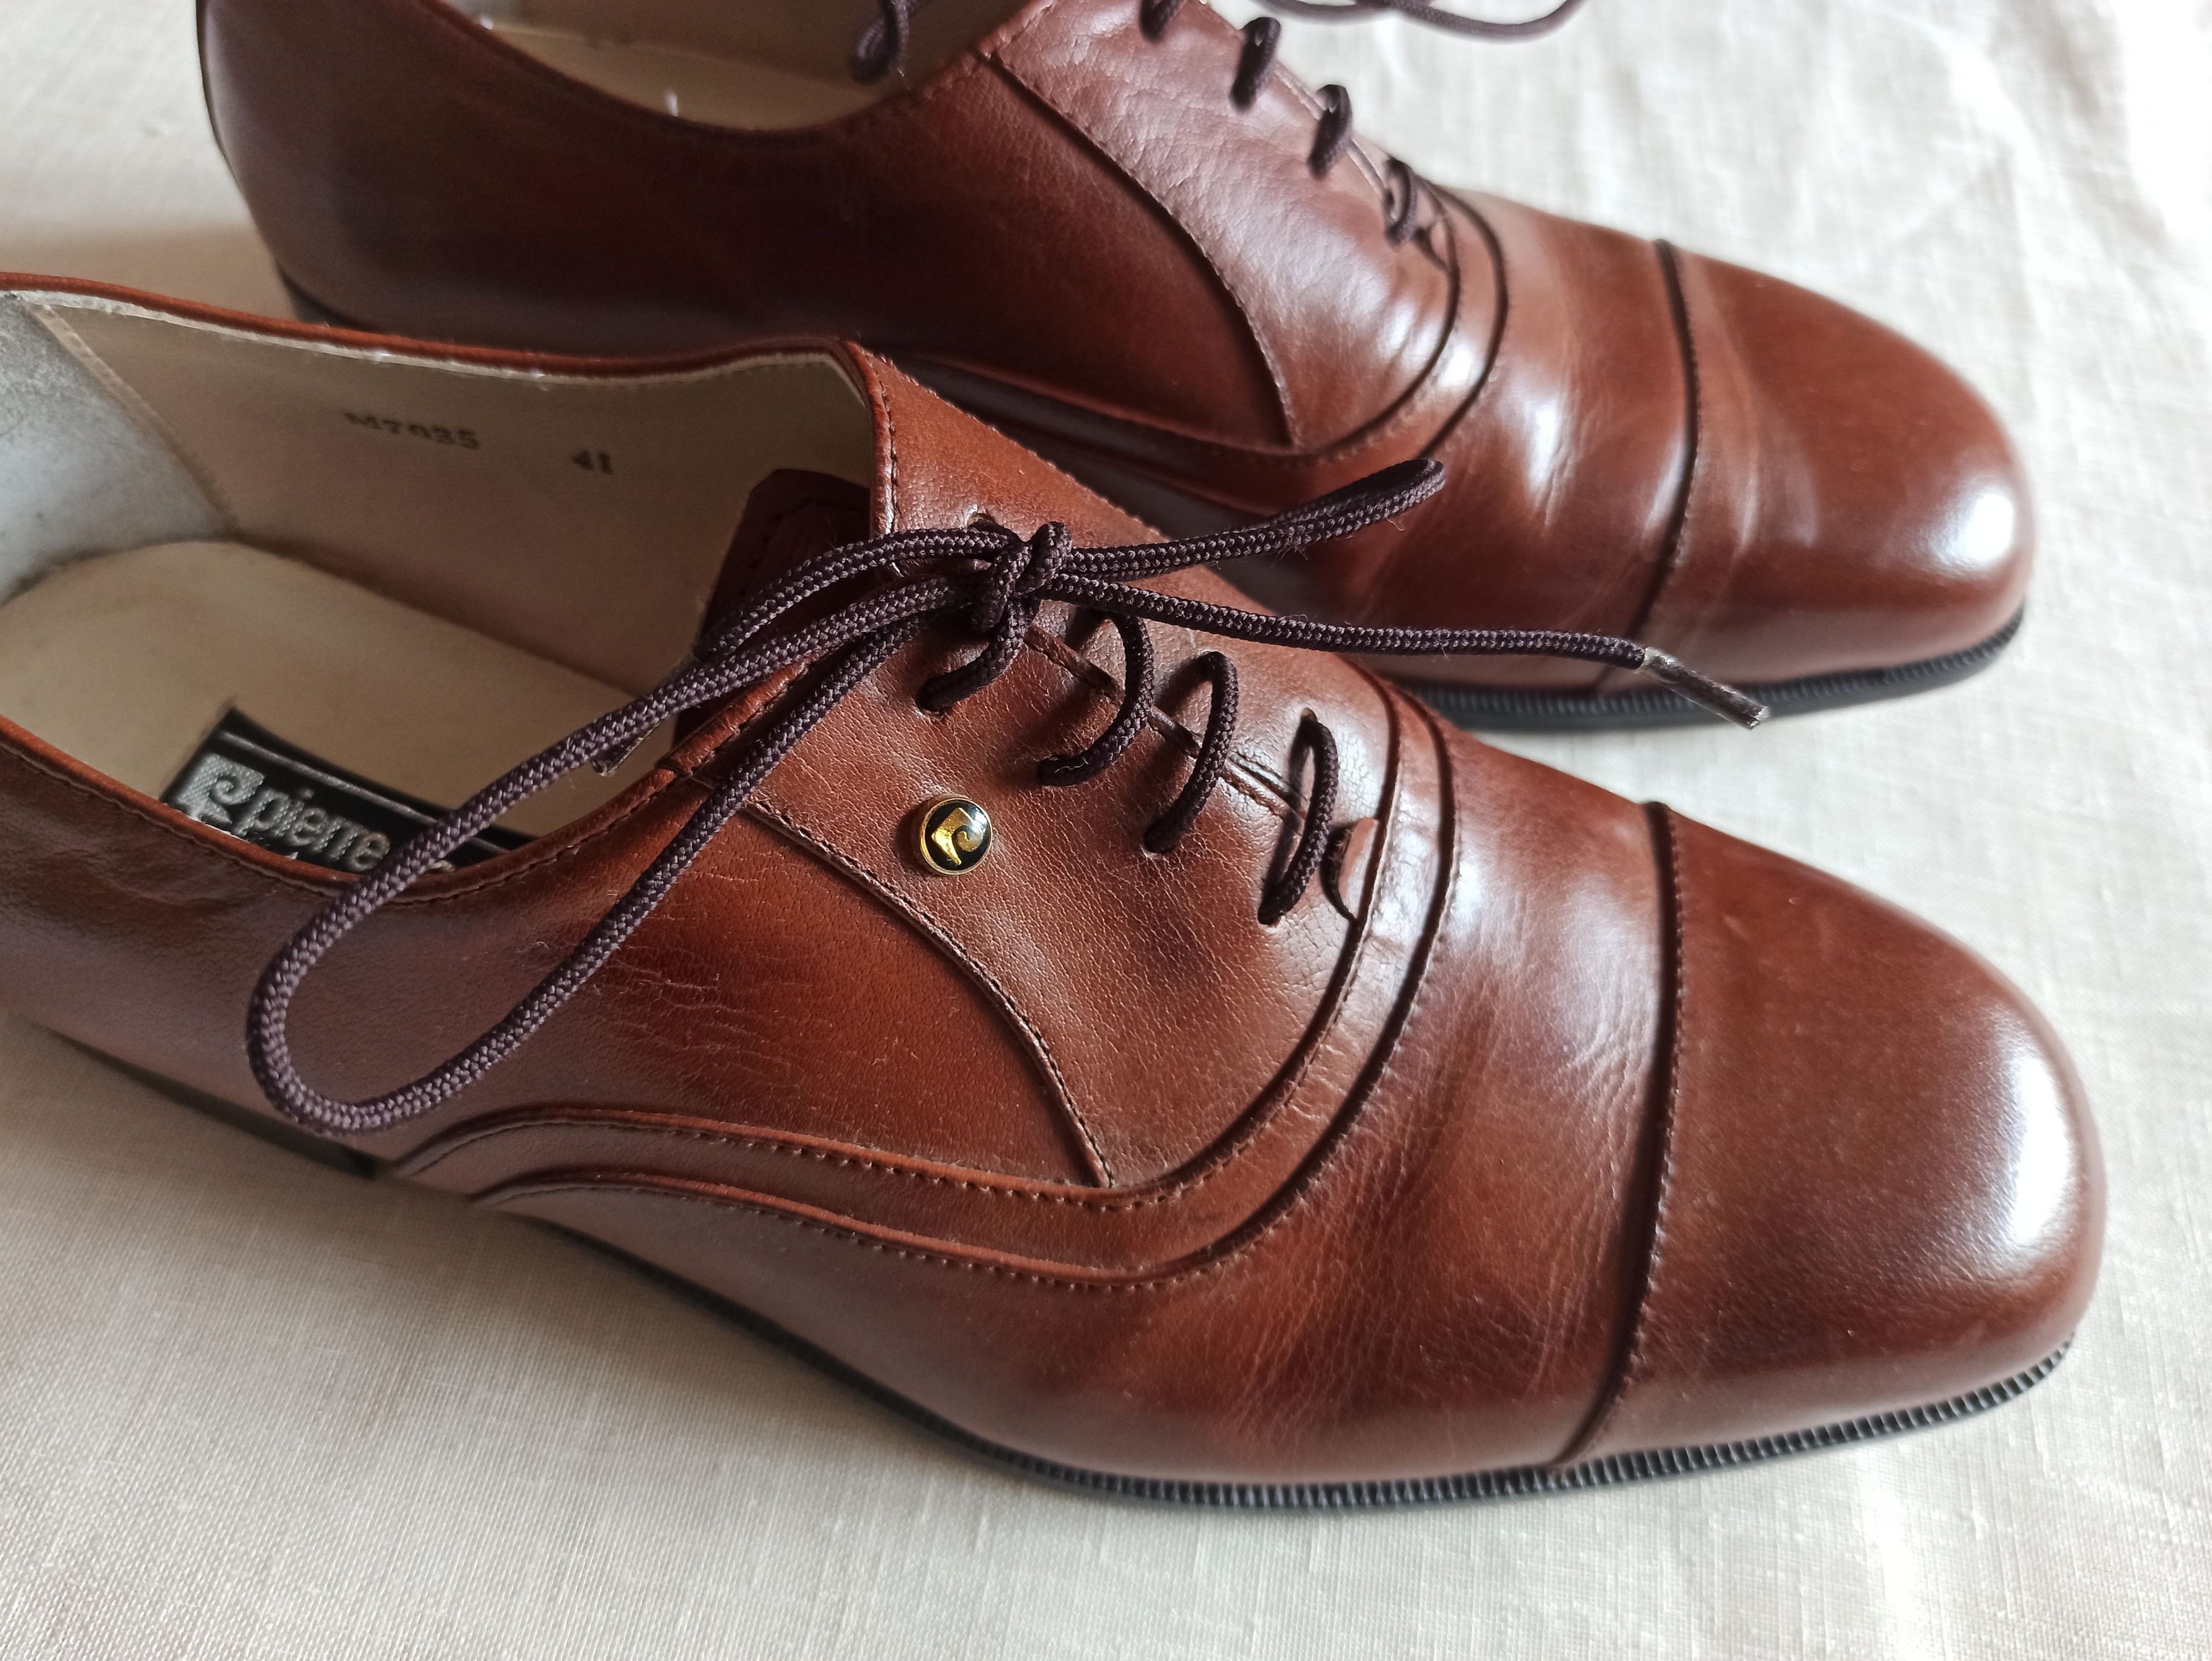 Pierre Cardin Vintage Pierre Cardin shoes Size US 8 / EU 41 - 2 Preview